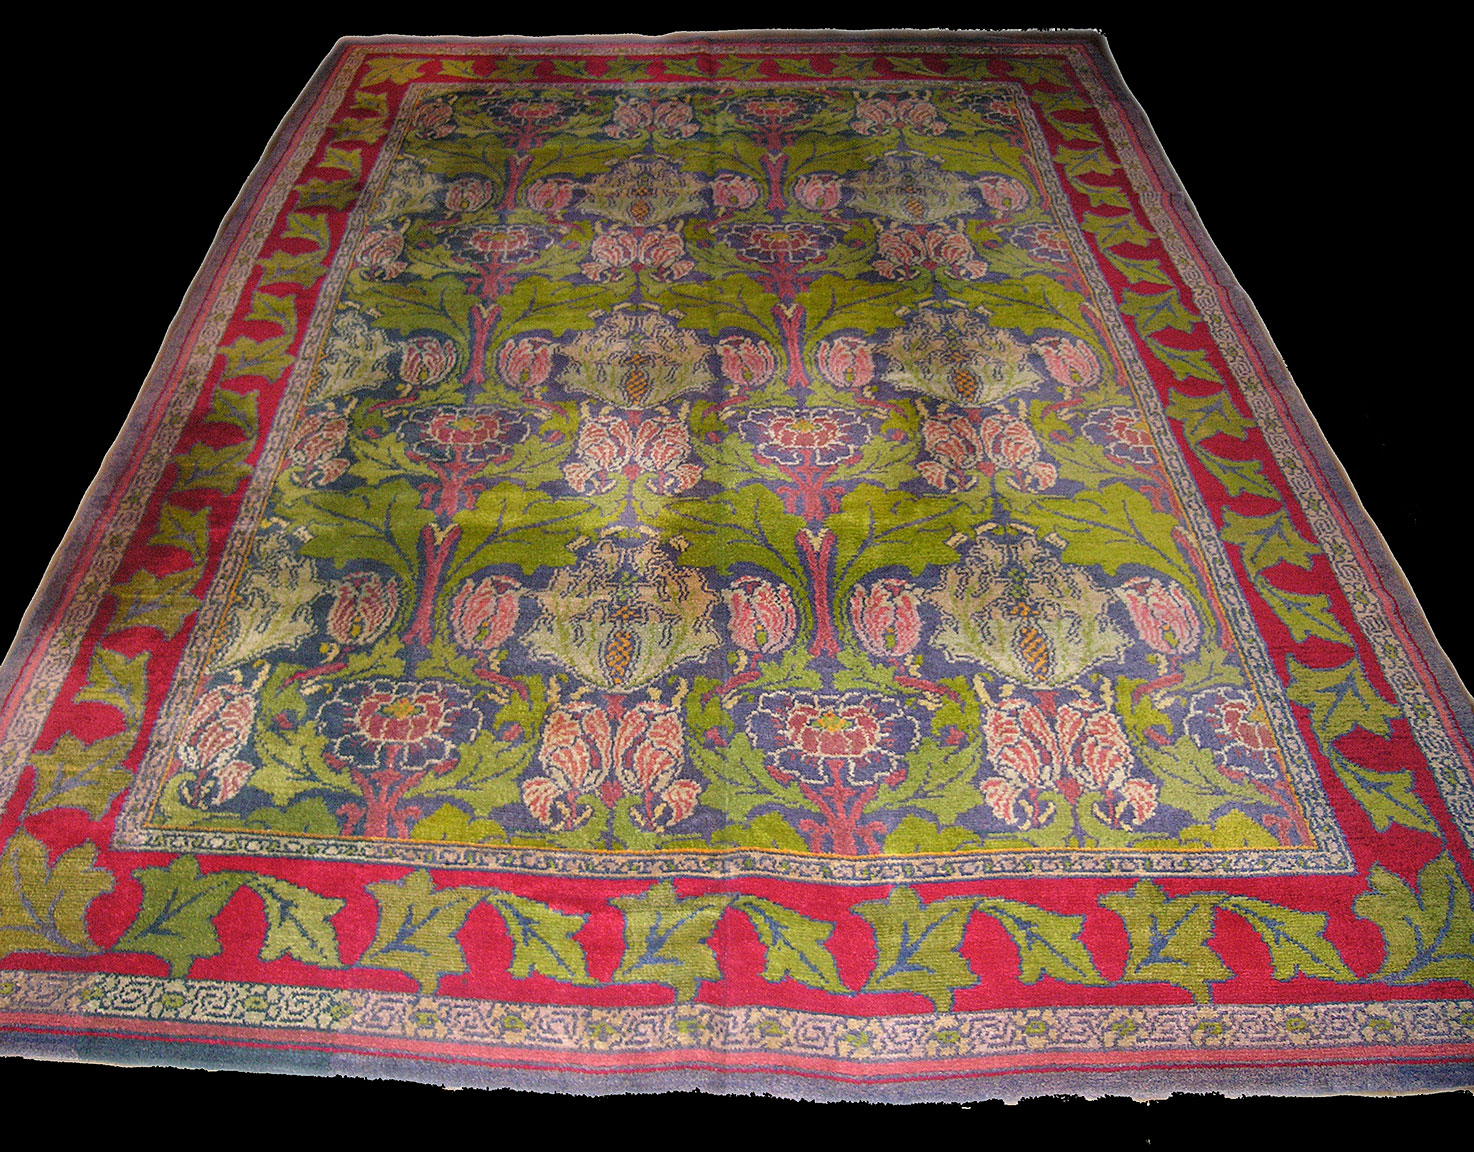 Vintage donegal Carpet - # 50358